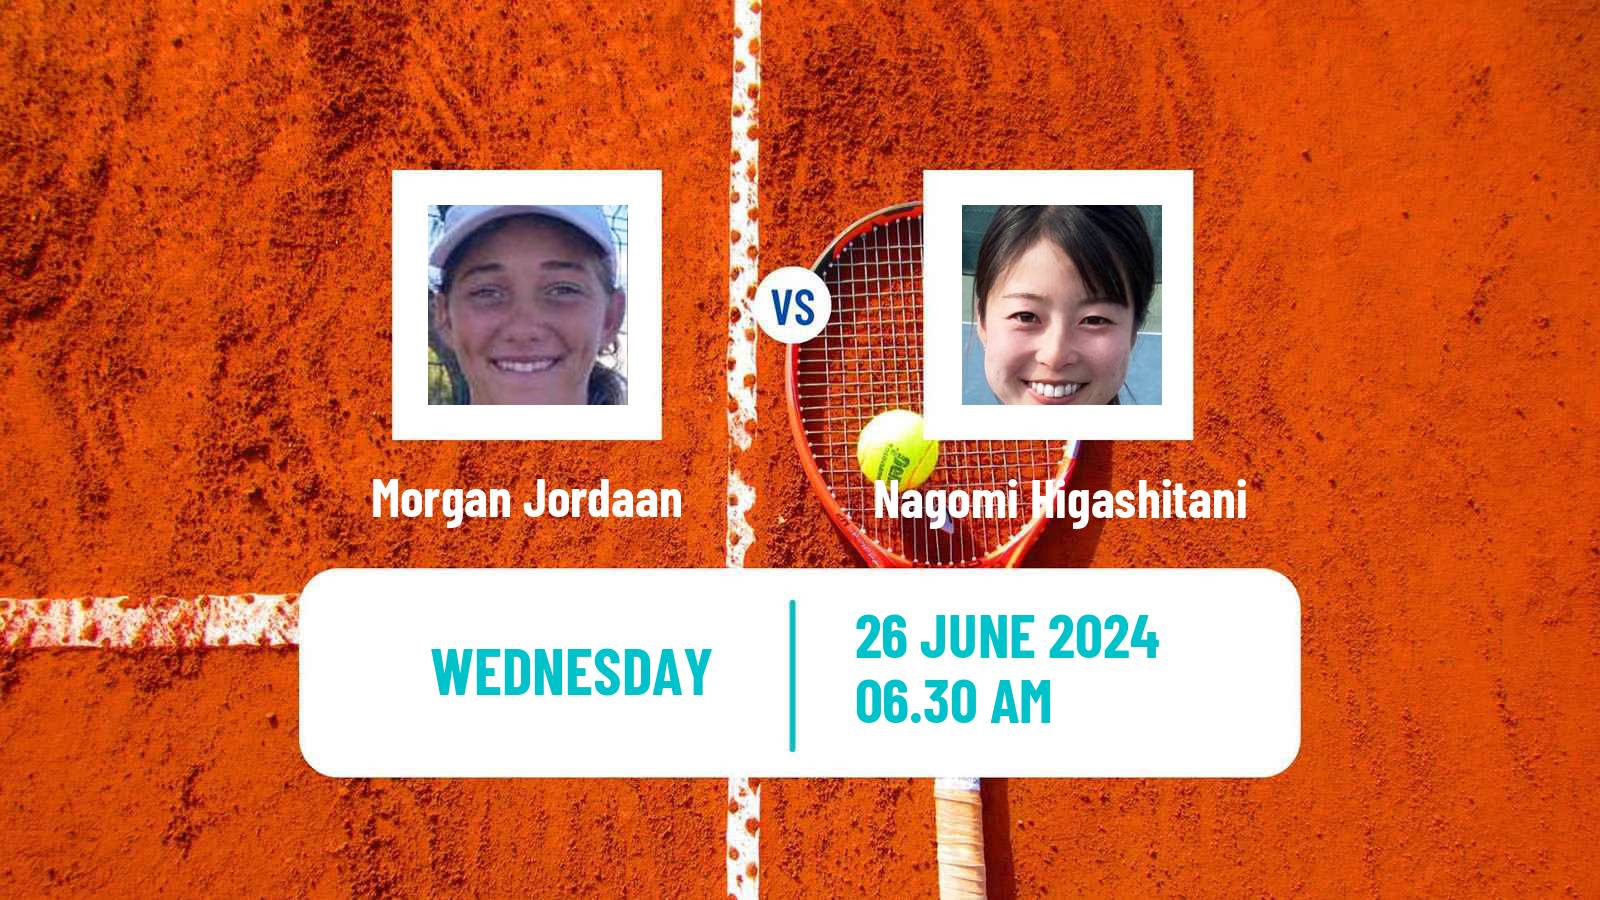 Tennis ITF W15 Hillcrest 2 Women Morgan Jordaan - Nagomi Higashitani